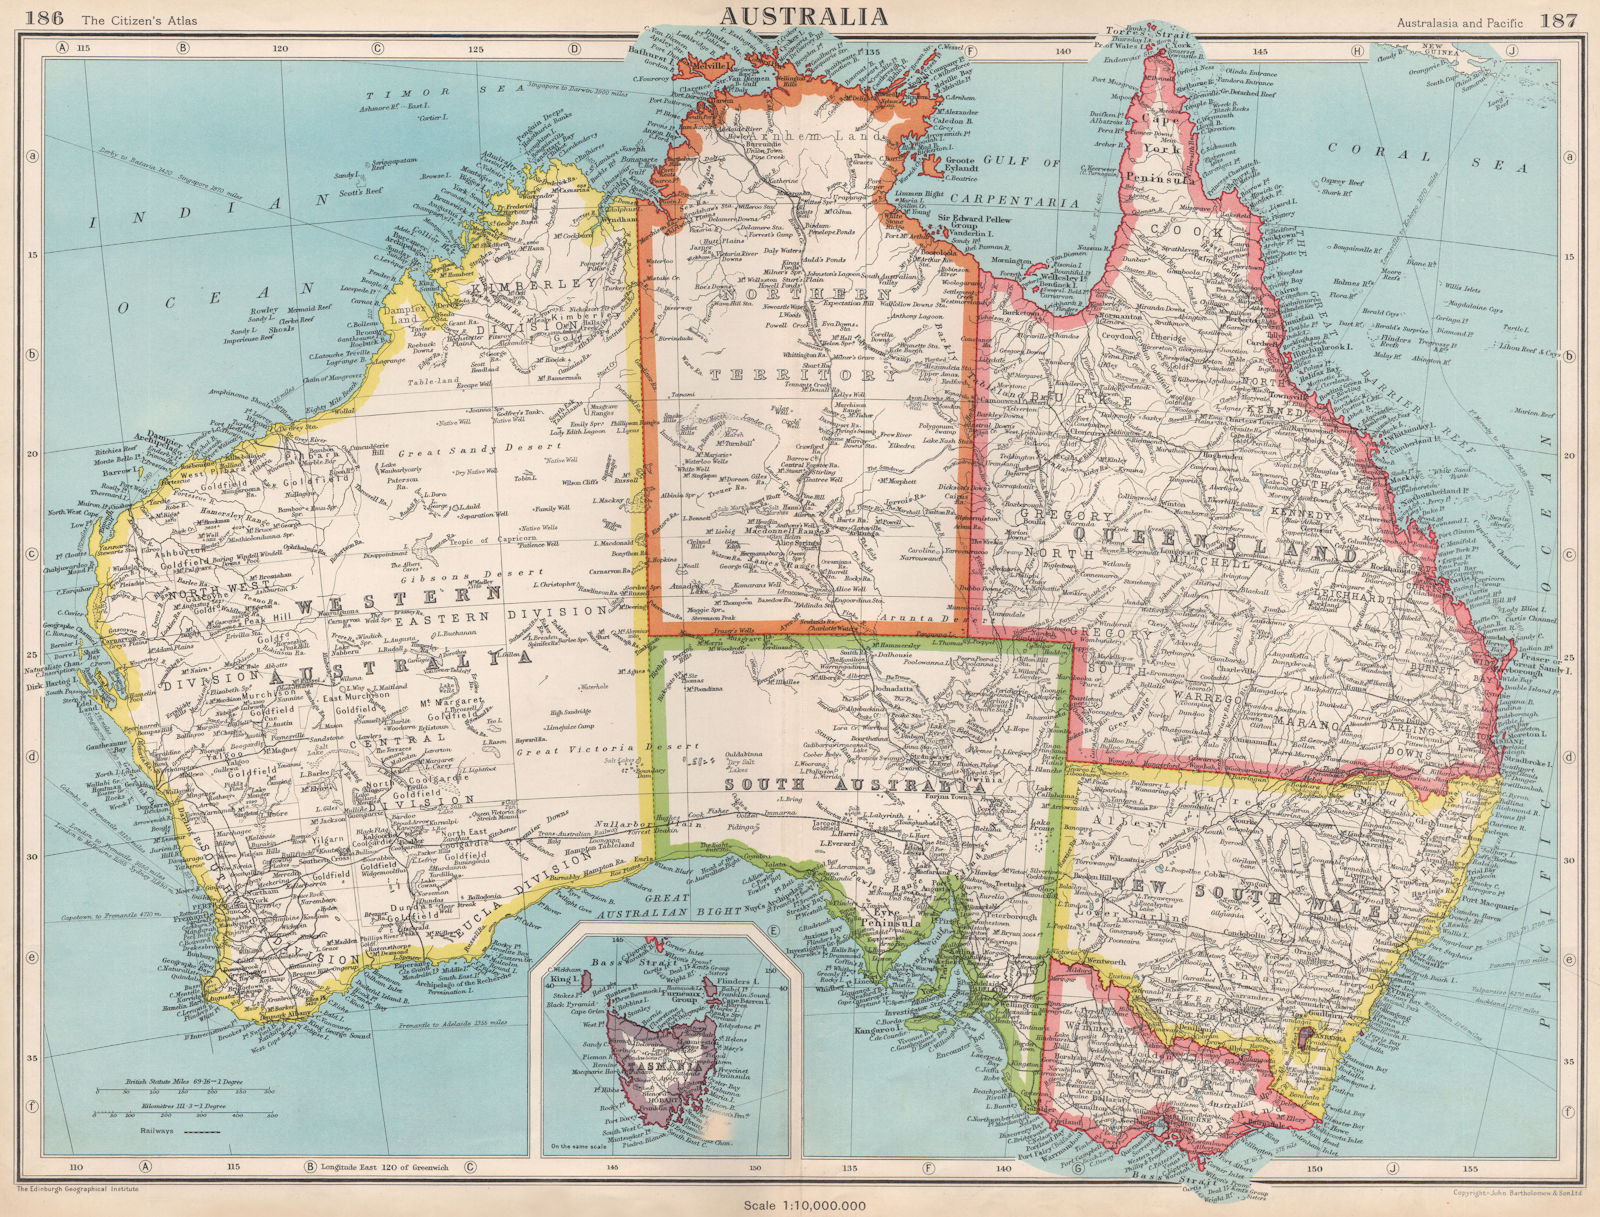 AUSTRALIA. Showing states and railways. BARTHOLOMEW 1952 old vintage map chart